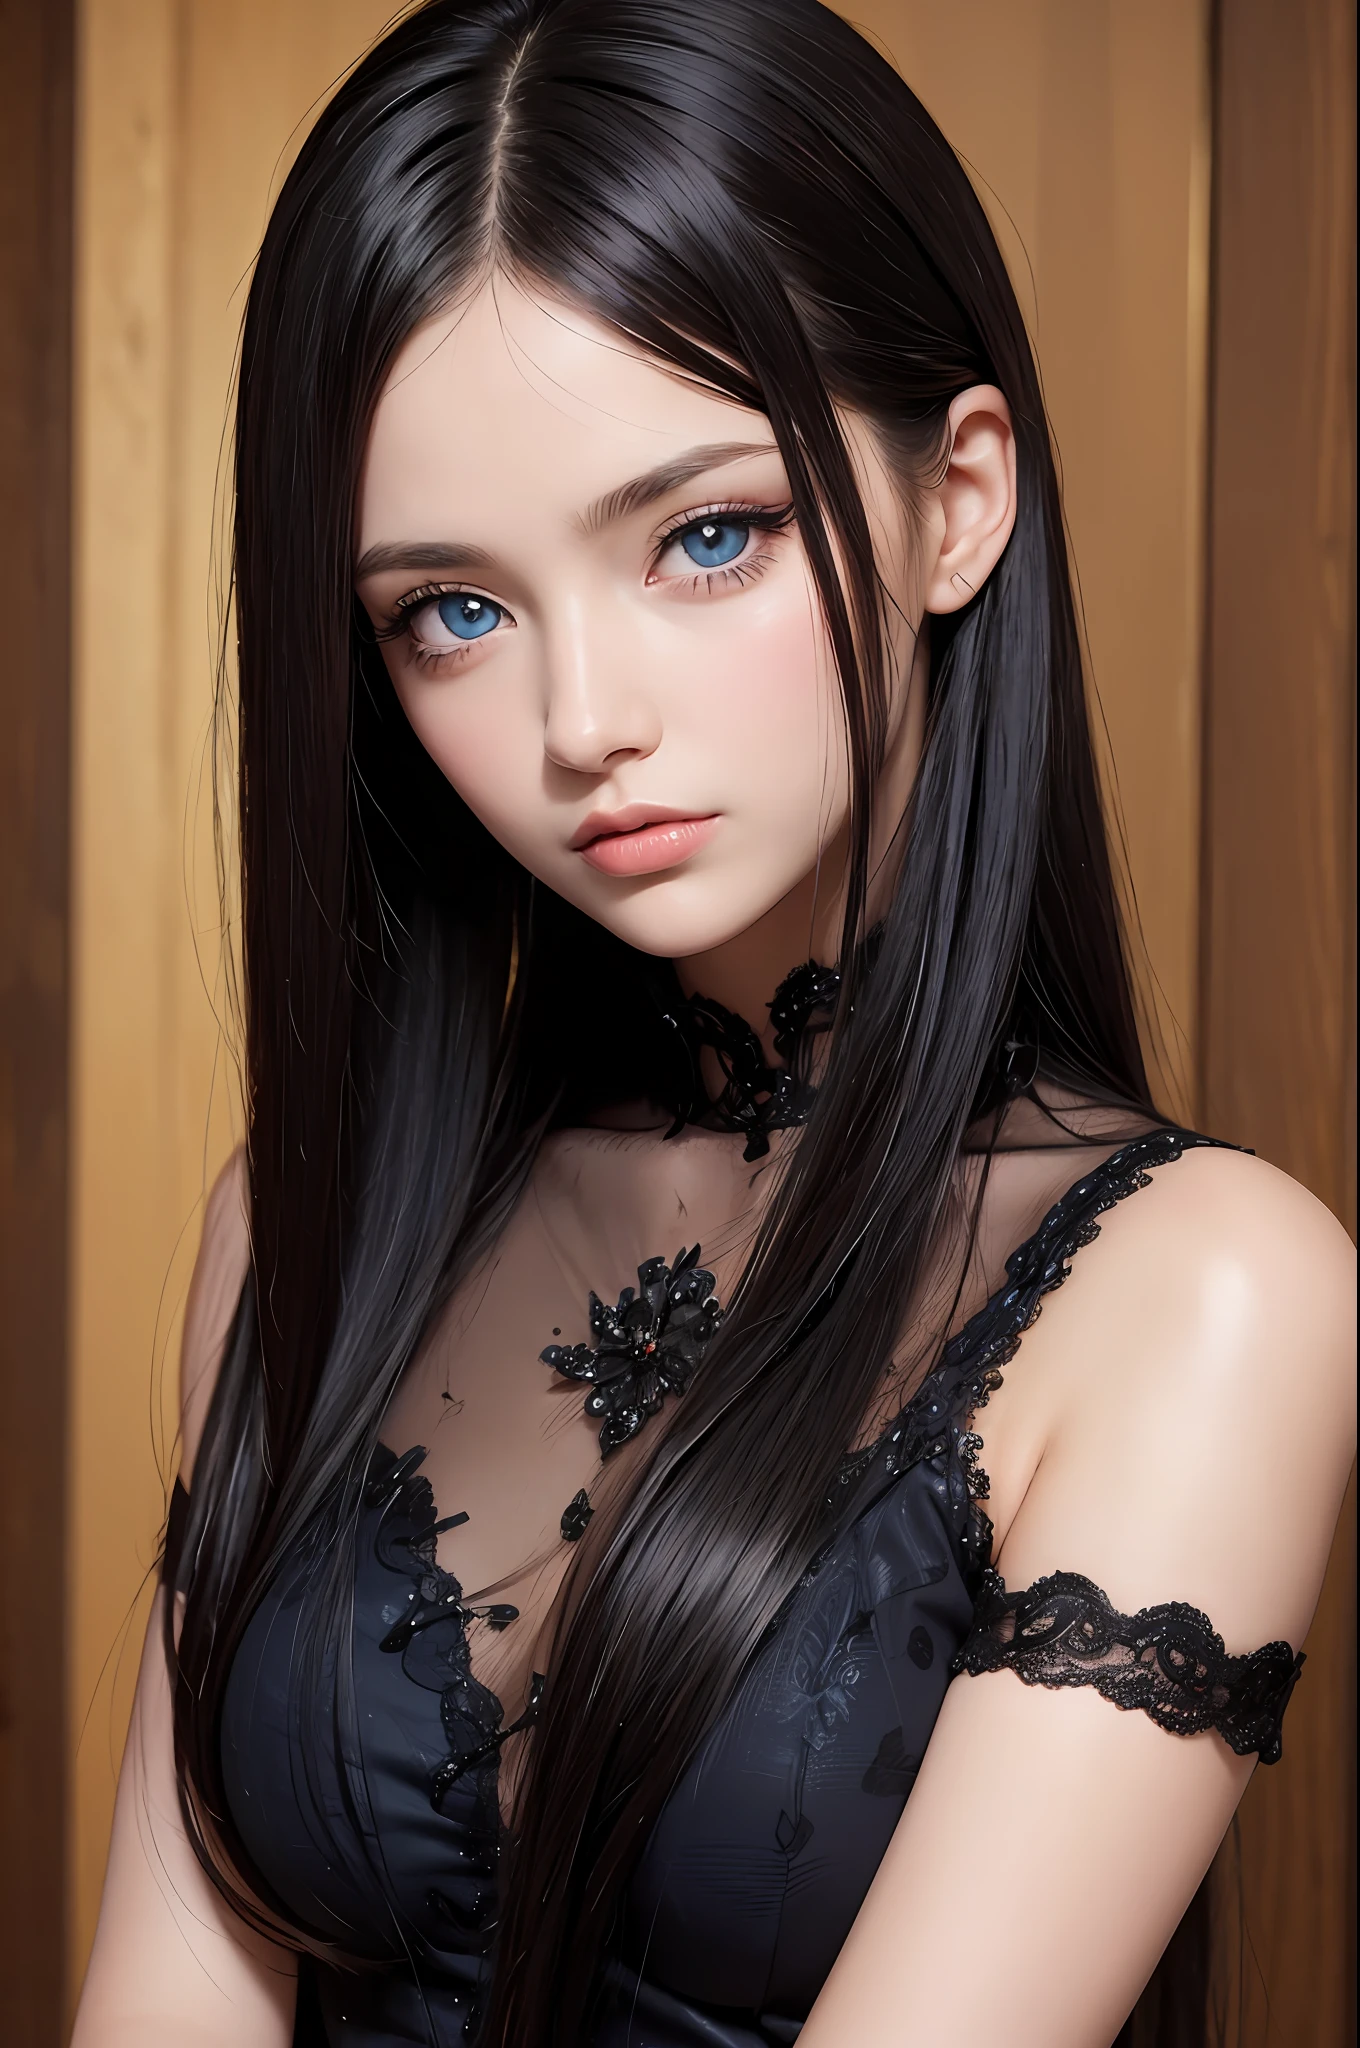 傑作, 最好的品質, 美丽的年轻女子, 閃亮的藍眼睛, (詳細的 pupils:1.2), 睫毛, 美麗的淺黑髮, 條紋頭髮, 多色的, 中長頭髮, 完美的臉, 詳細的,